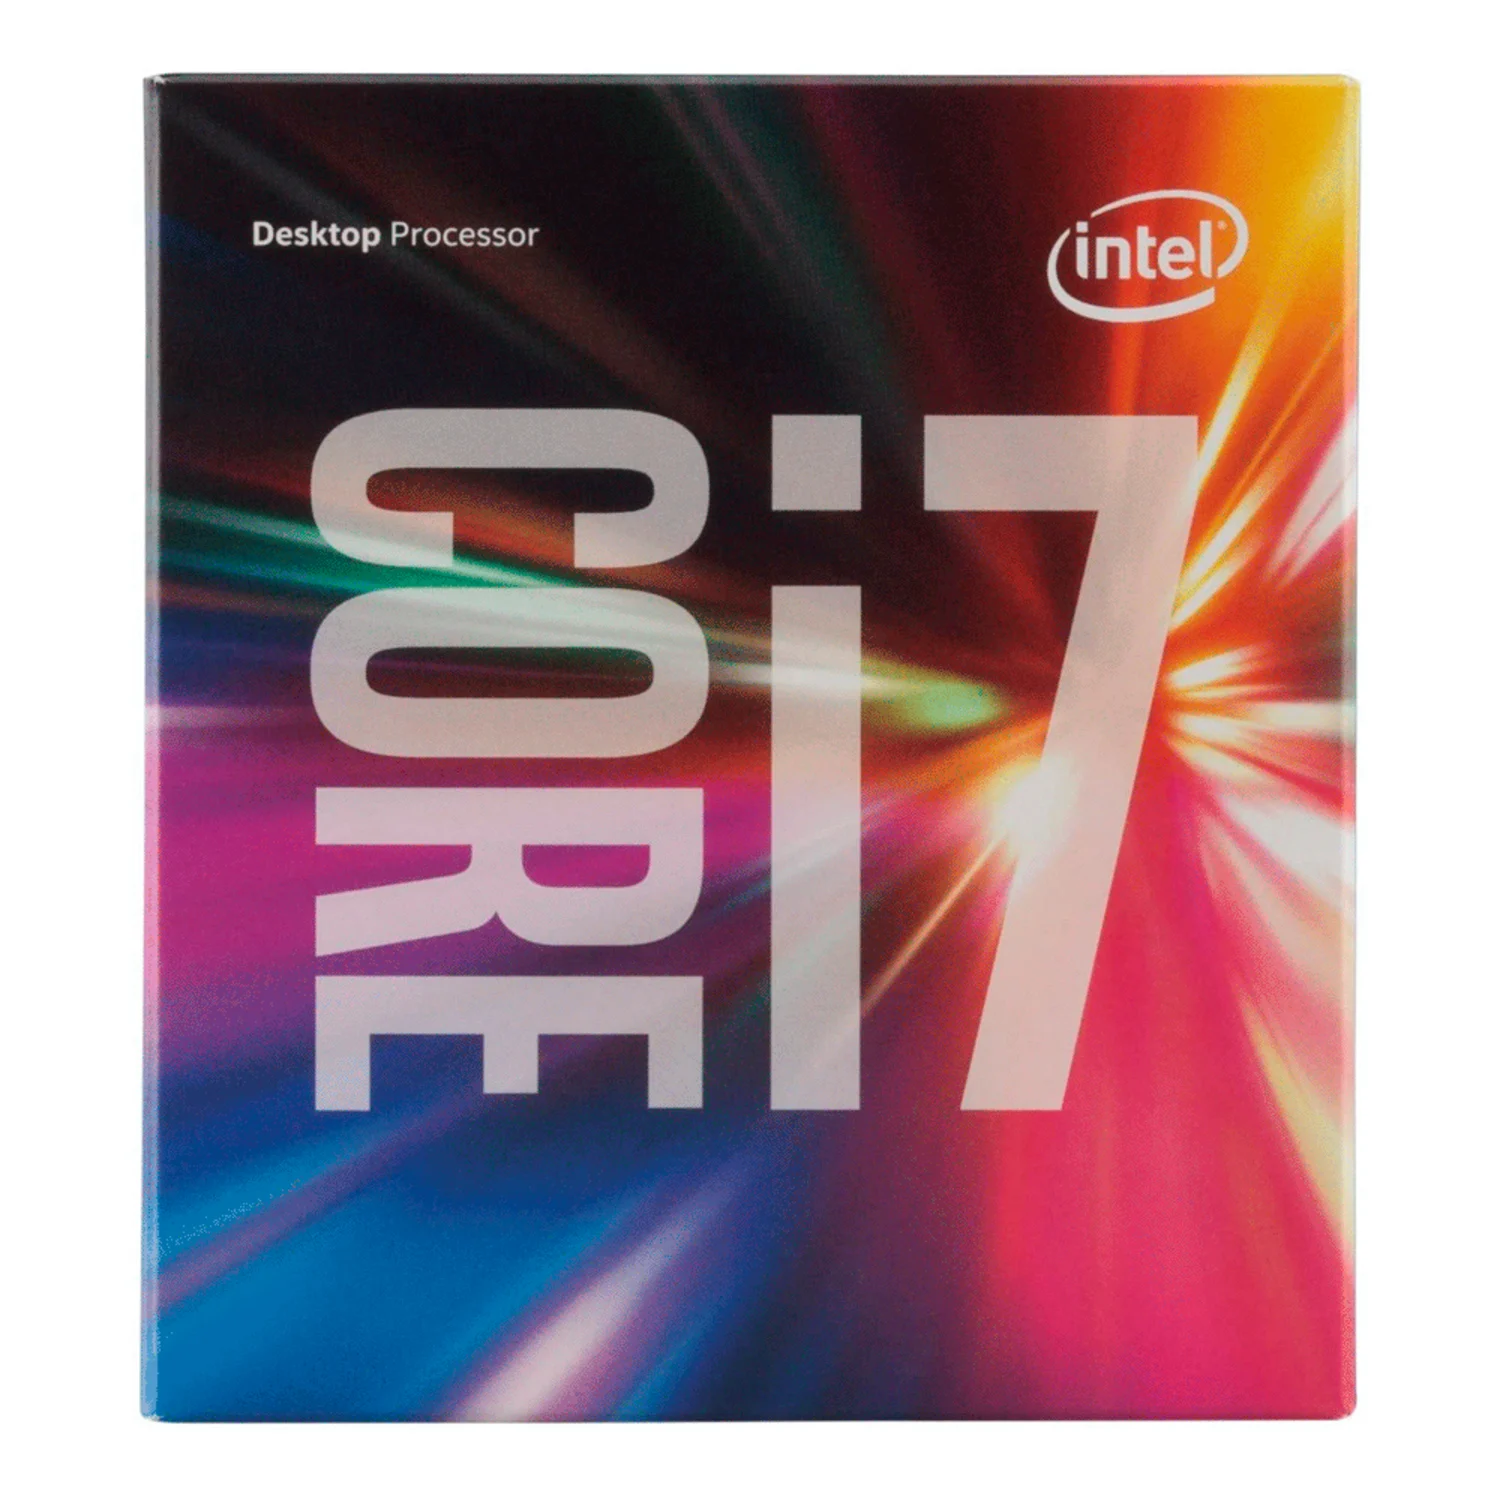 Processador Intel Core I7 6700 Pull 6ª Geração/ Soquete 1151/ 4C / 8T